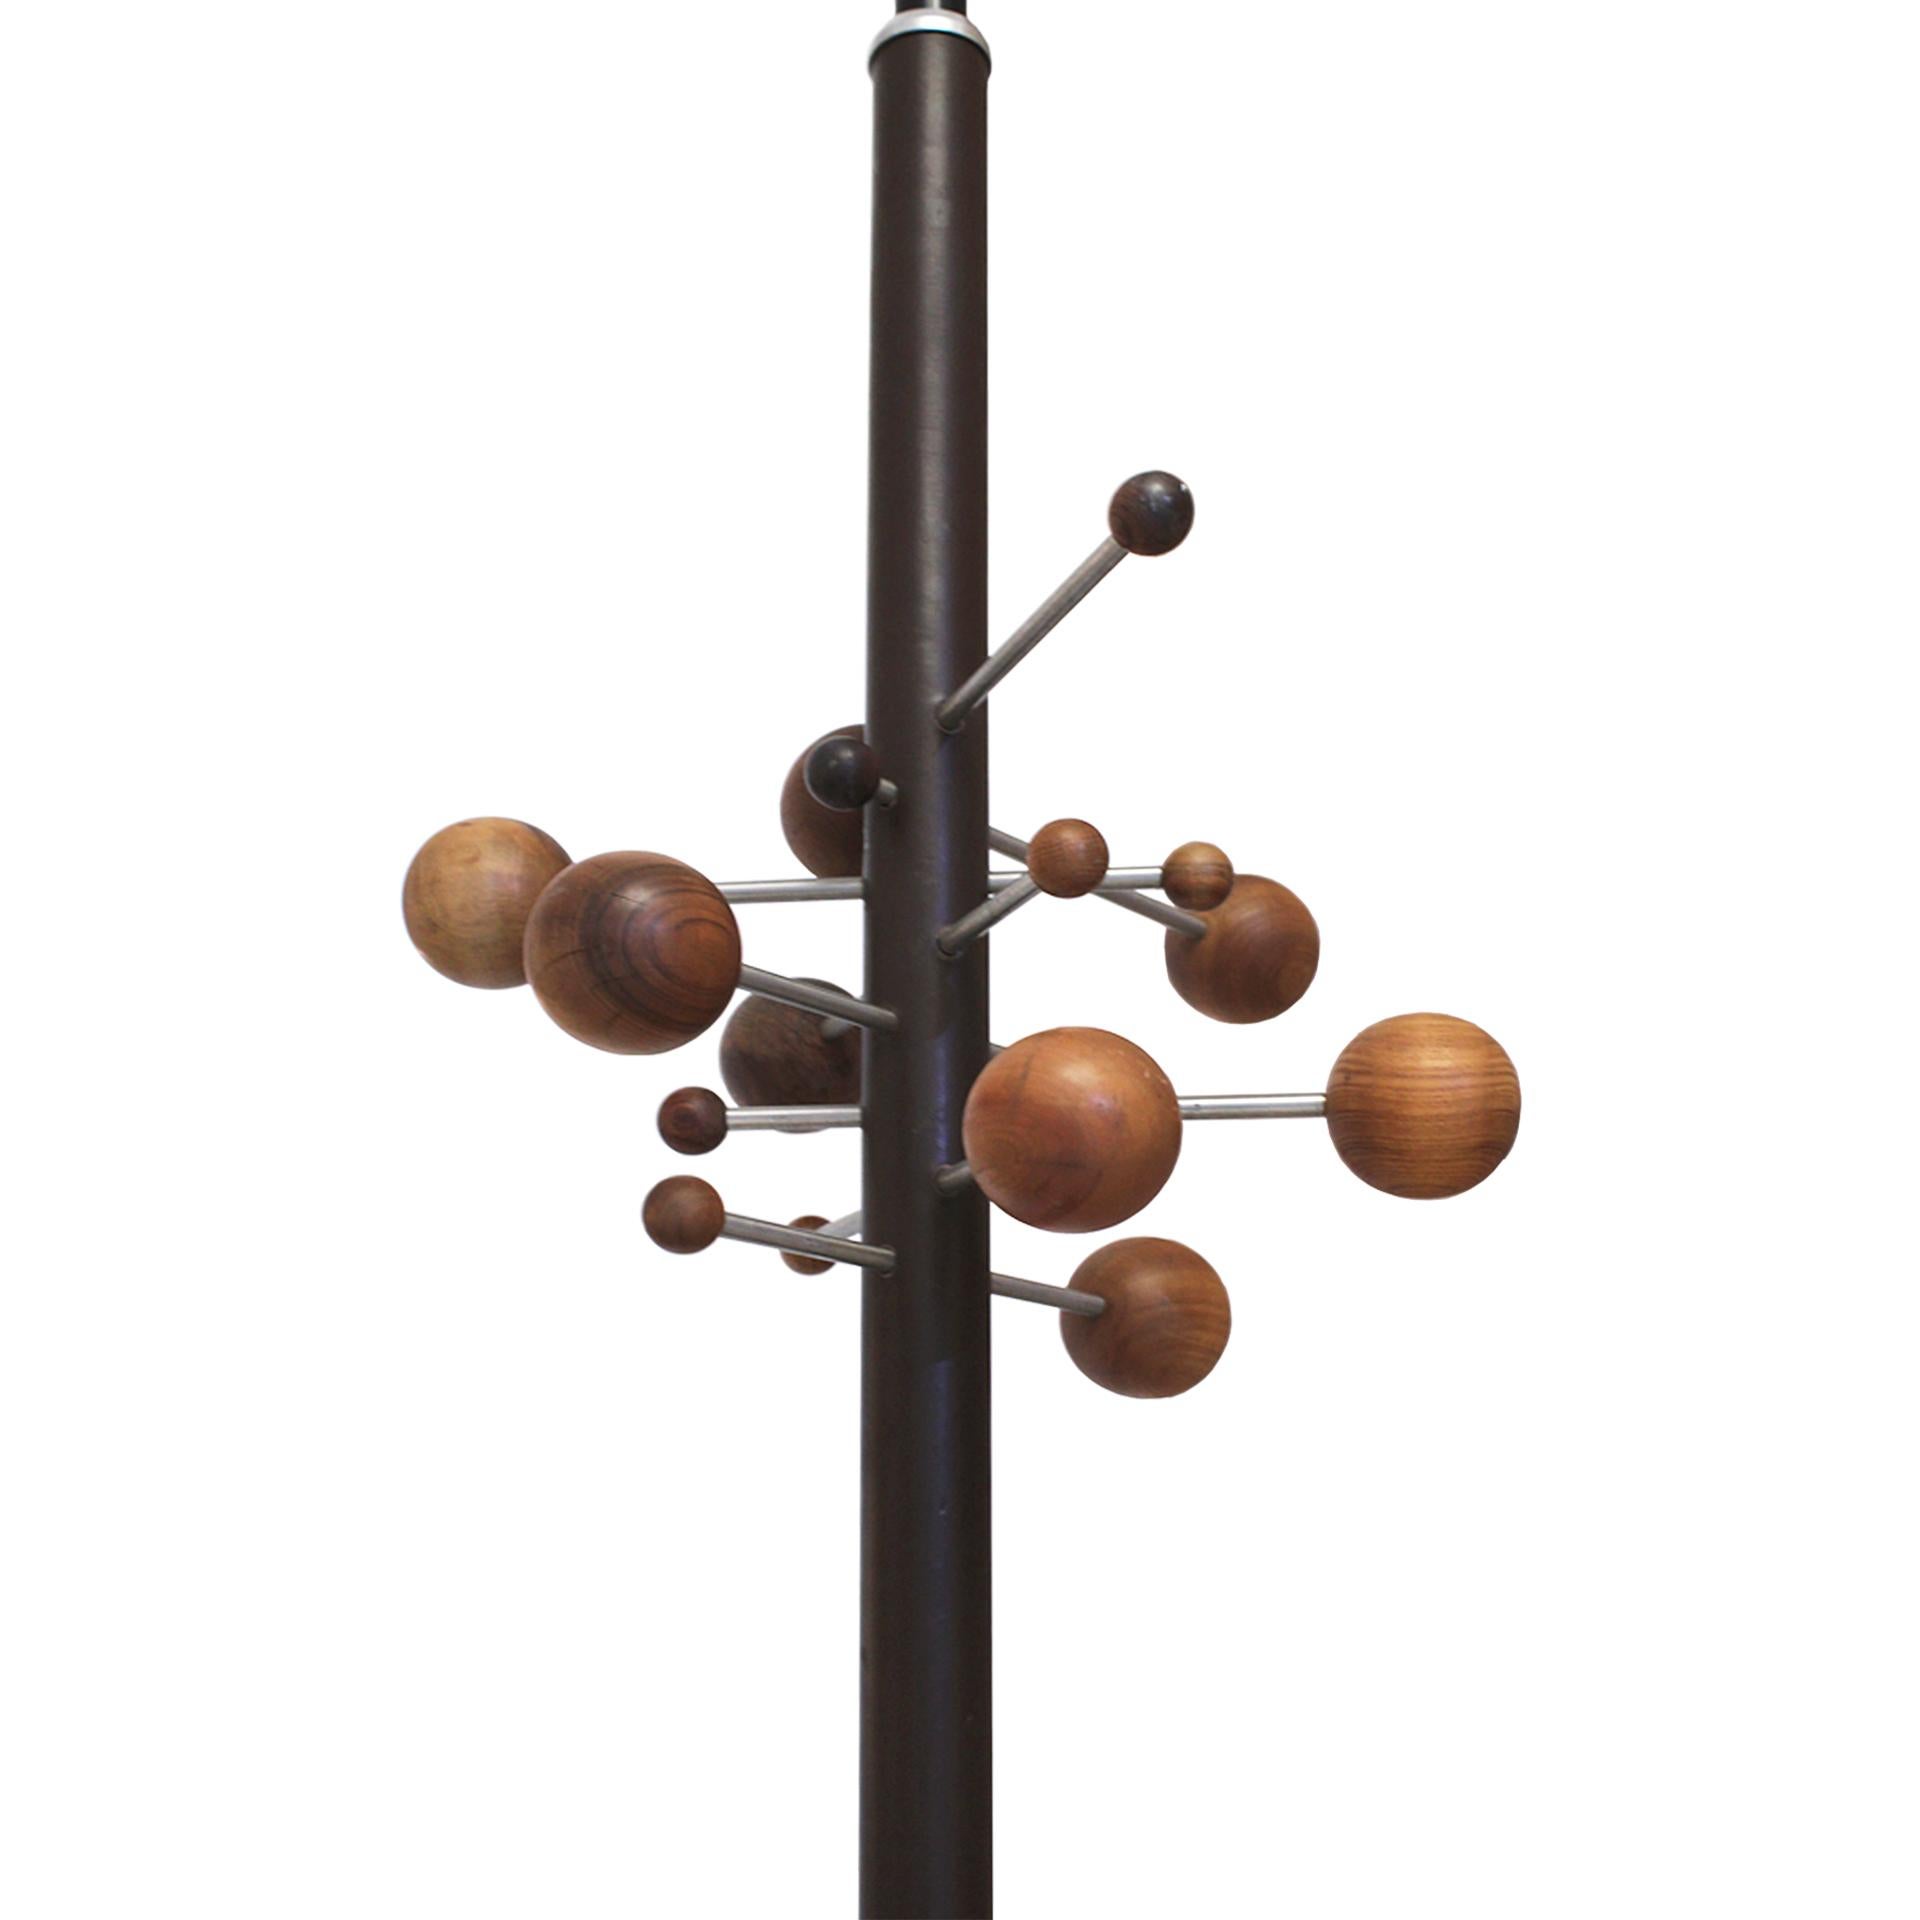 Garderobenständer Modell AT 16, entworfen von Osvaldo Borsani für Tecno. Die Struktur besteht aus zwei Teilen, einem festen Metallteil, das mit Naturleder gefüttert ist, und einem Teleskopstiel aus schwarz lackiertem Metall. Kugelförmige Aufhänger